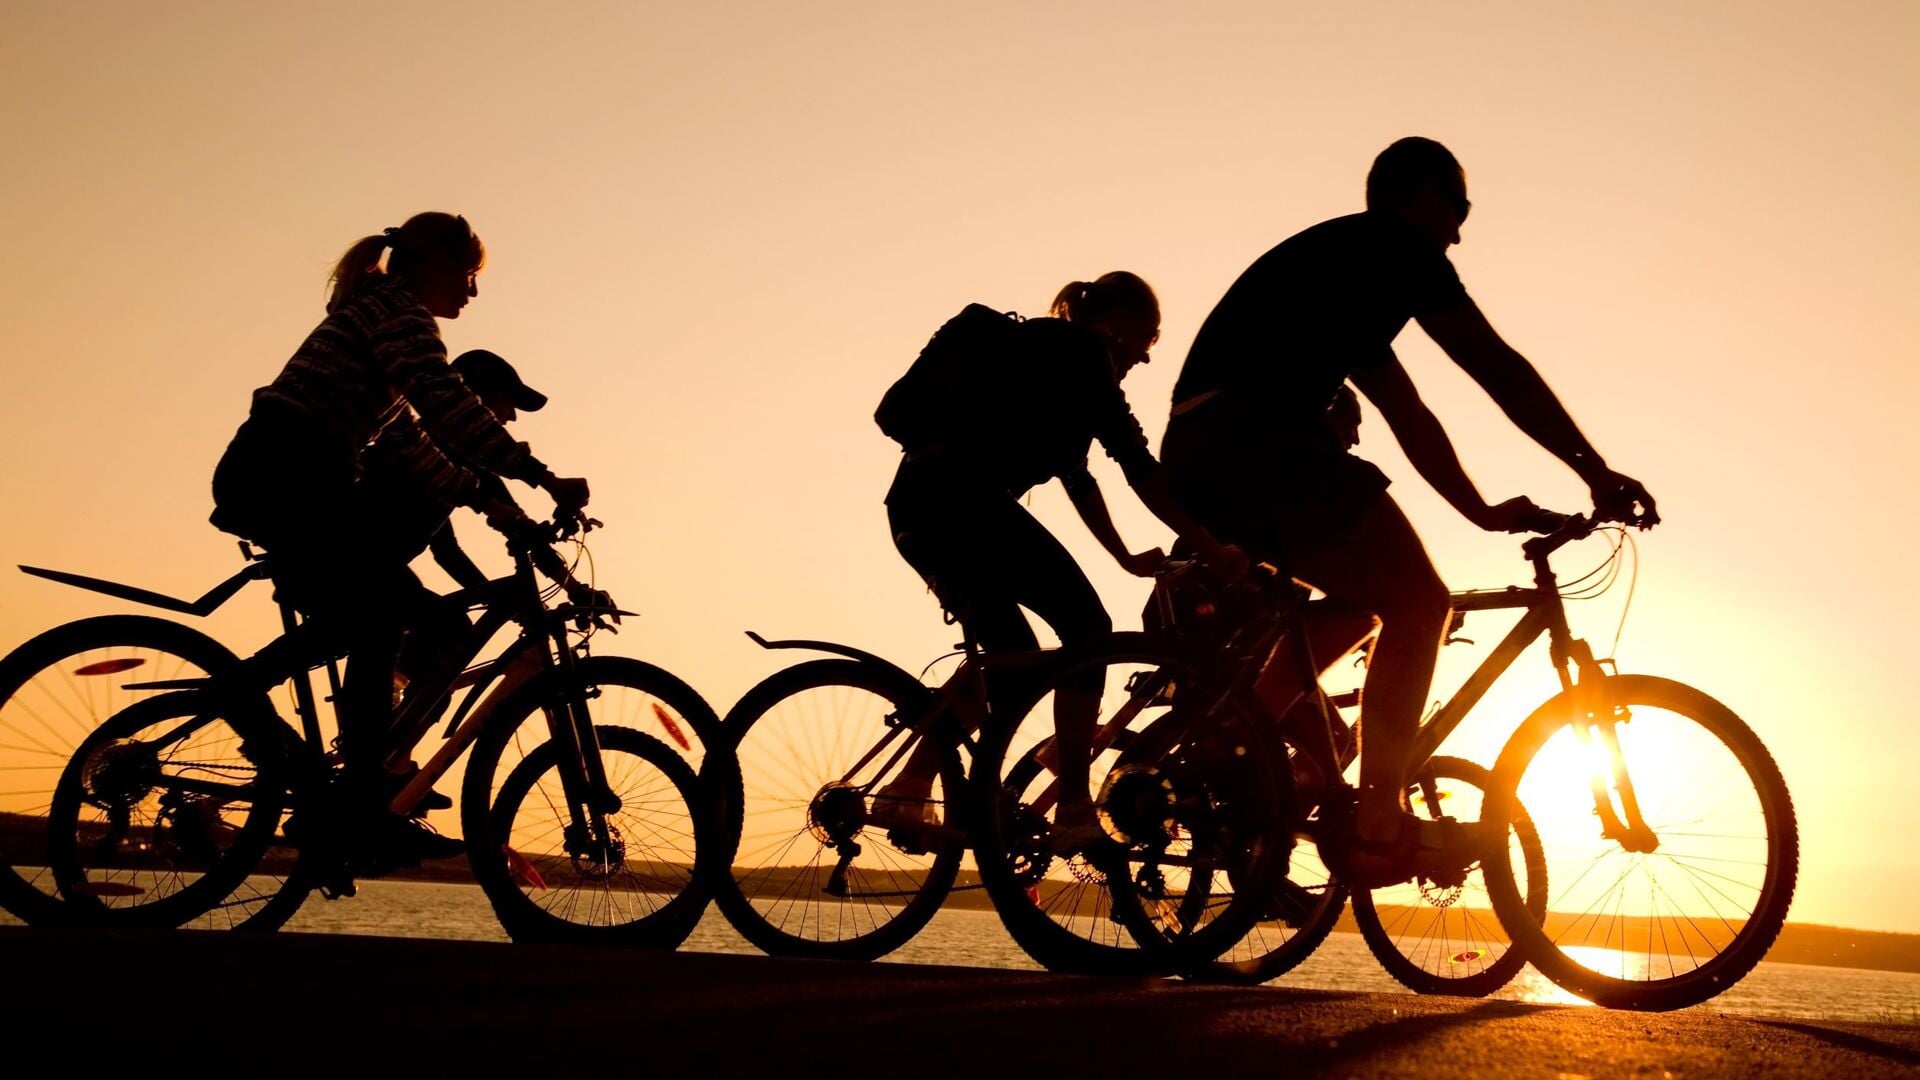 • 'Geef elkaar de tijd en ruimte om elkaar veilig te passeren of in te halen', zeggen zowel wielrenners, e-bikers, toerfietsers als stadsfietsers.